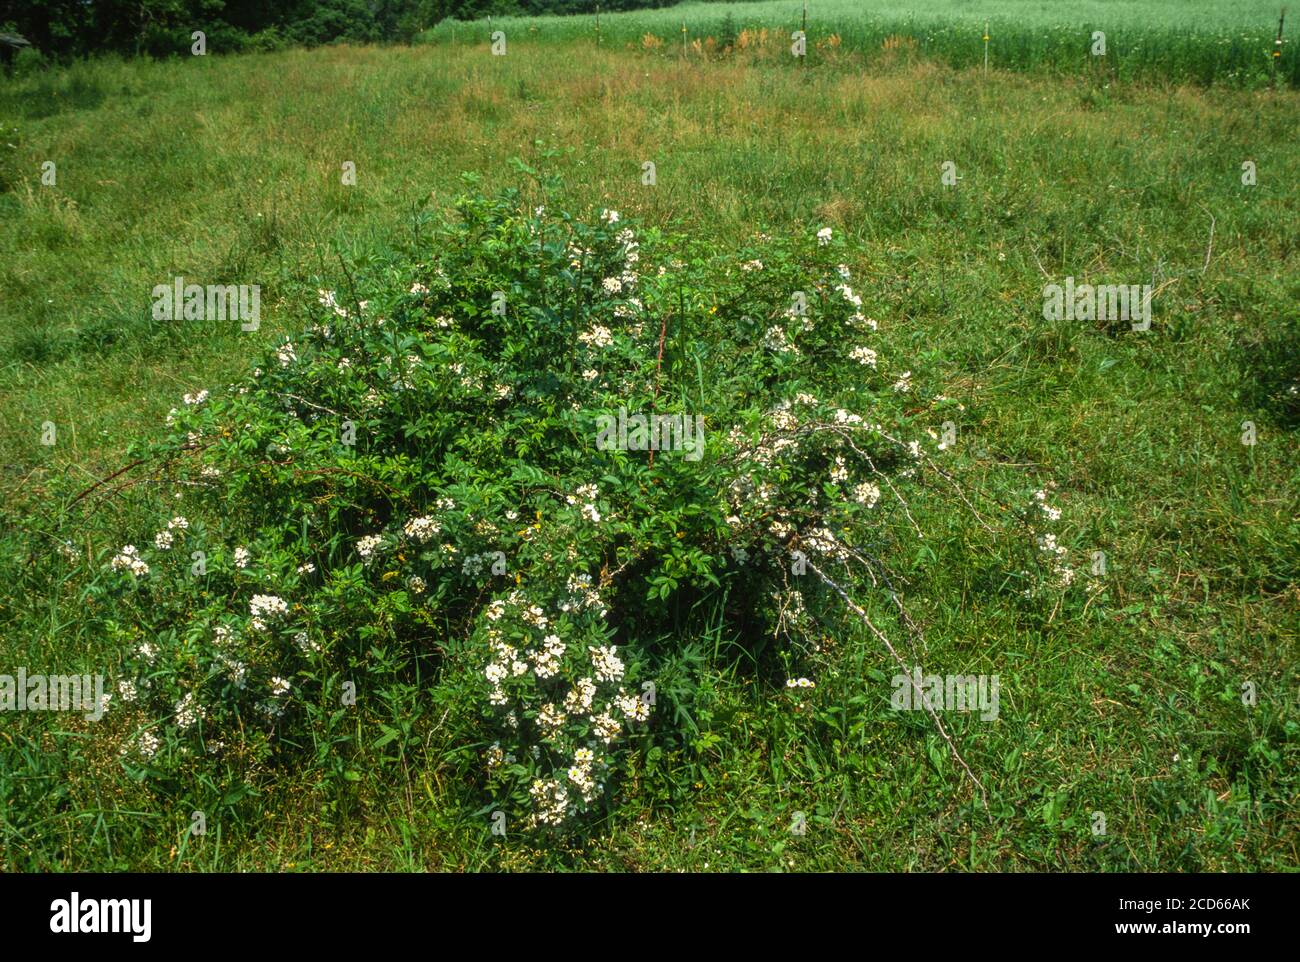 Espèces envahissantes : la rose multiflorale empiète sur les pâturages, Dyersville, Iowa, États-Unis. Banque D'Images